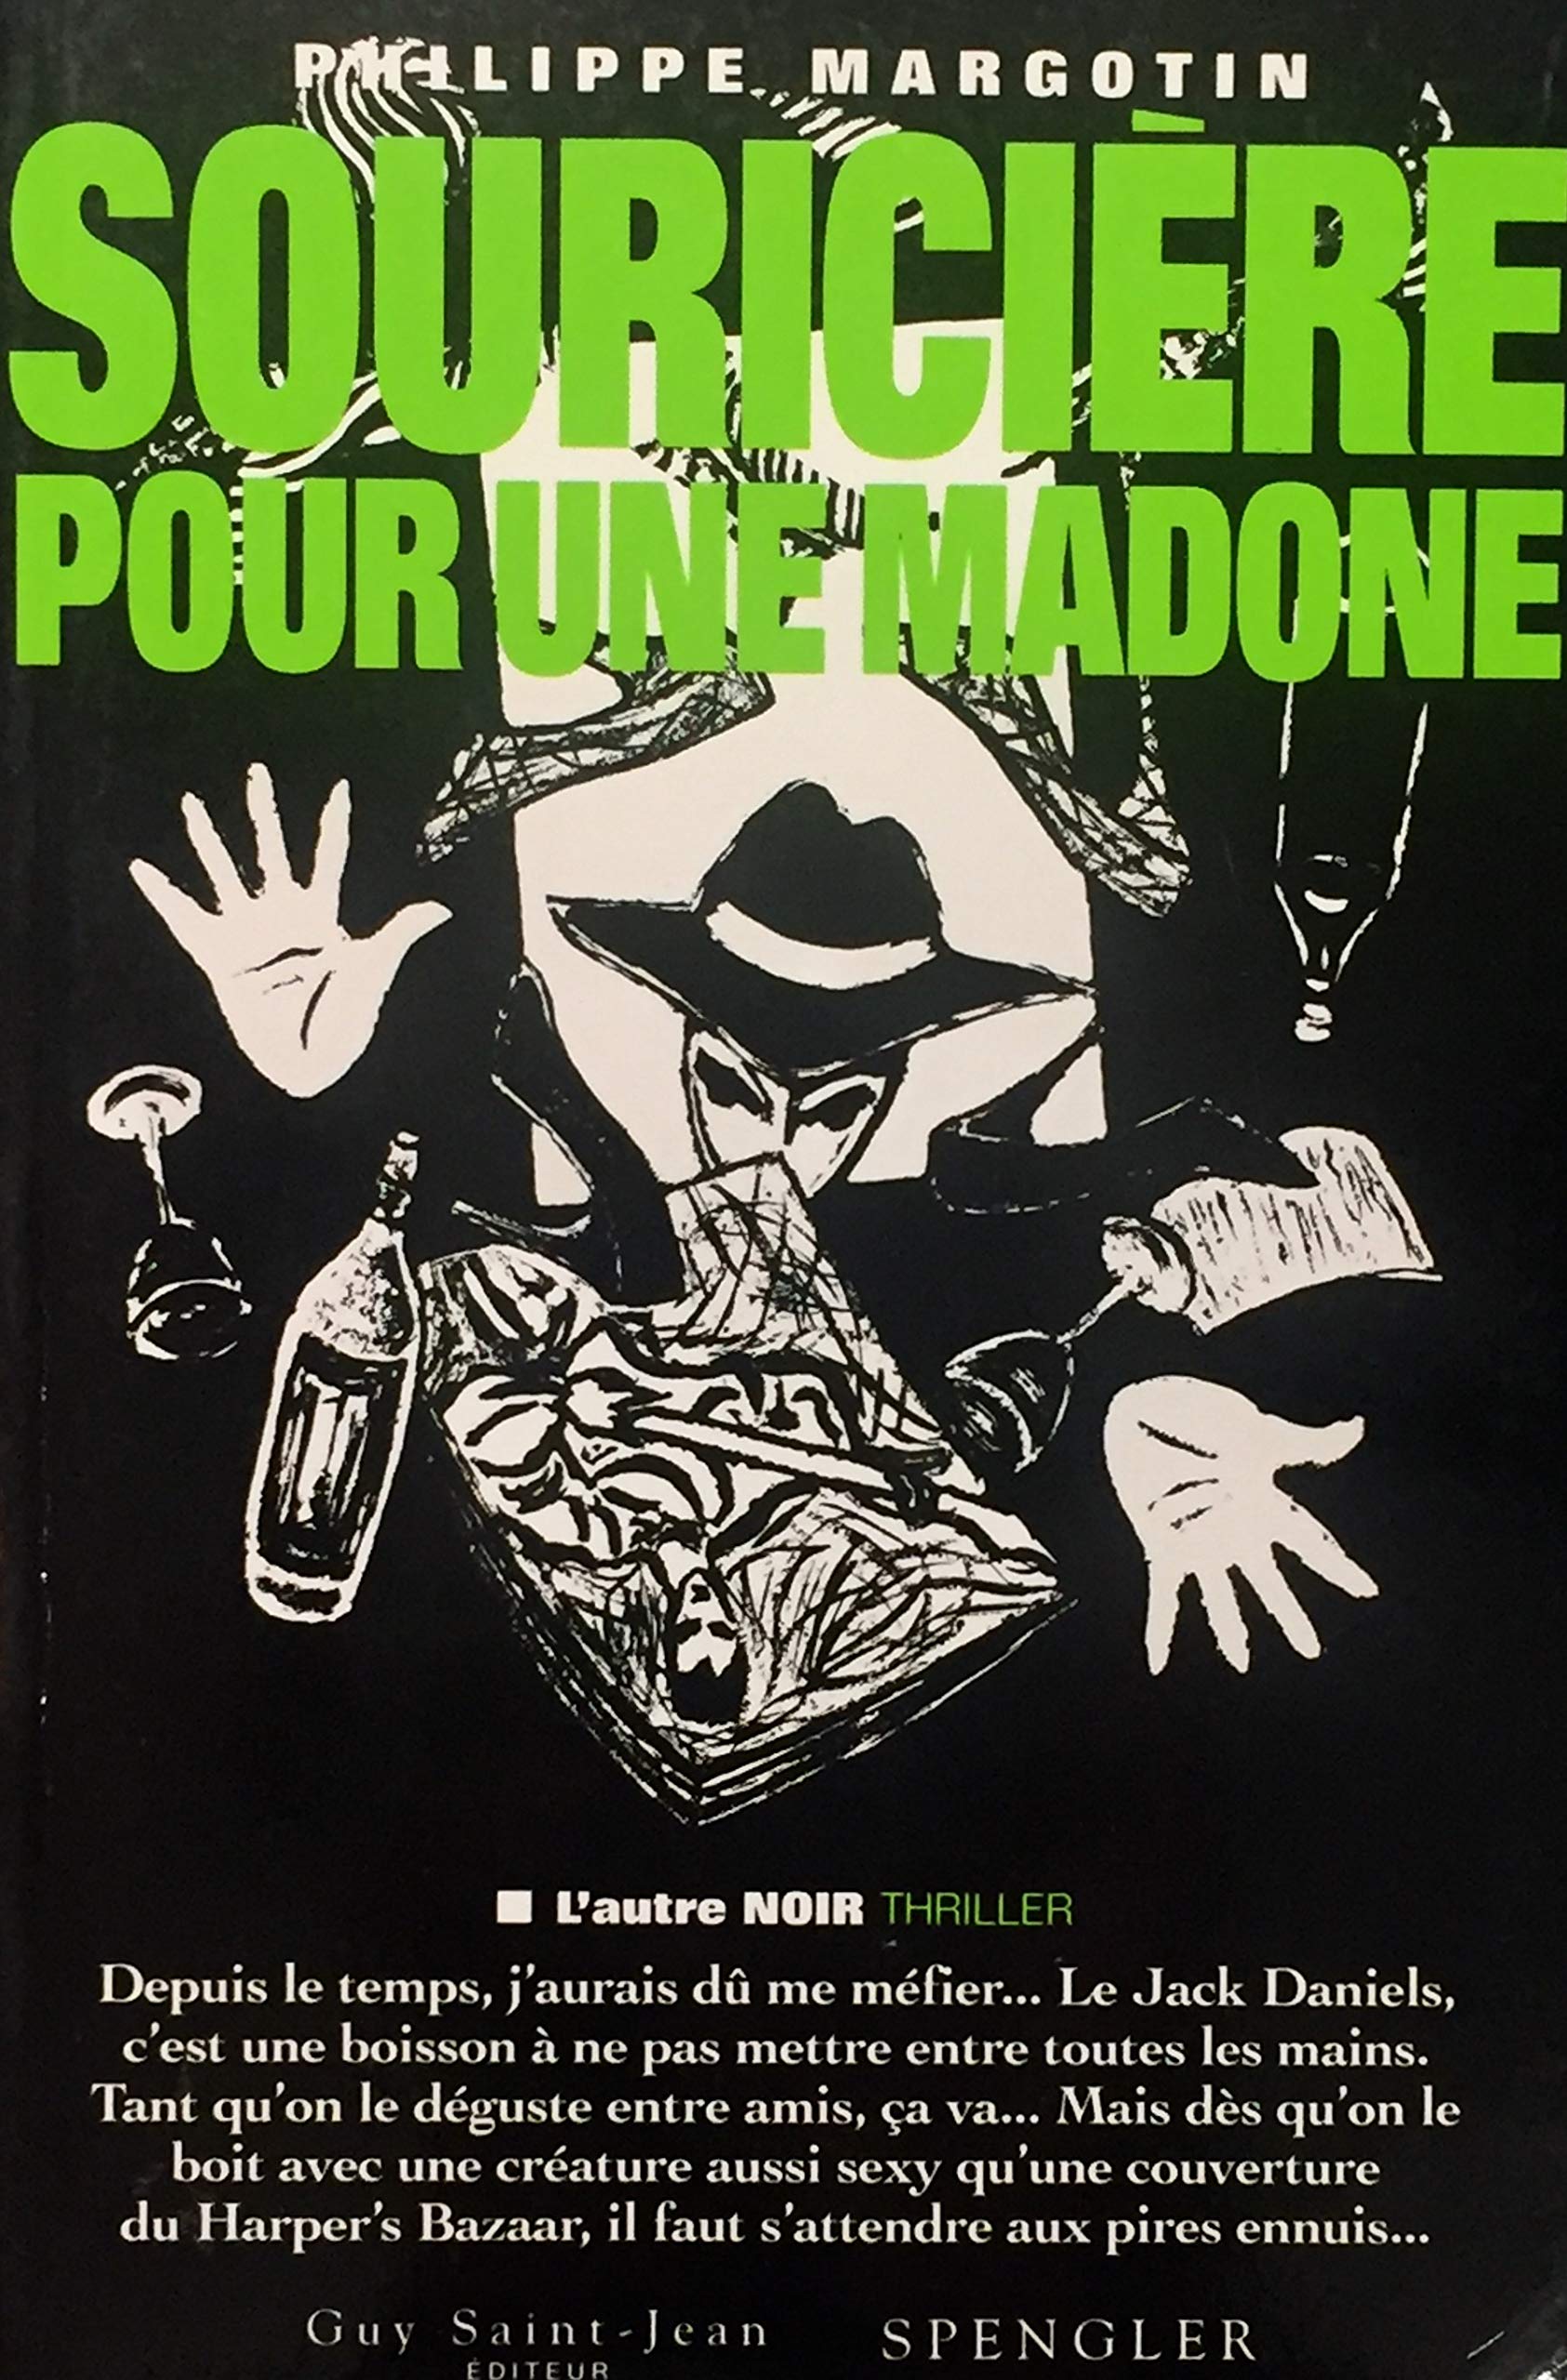 Livre ISBN 2894550006 L'autre noir : Souricière pour une madone (Philippe Margotin)